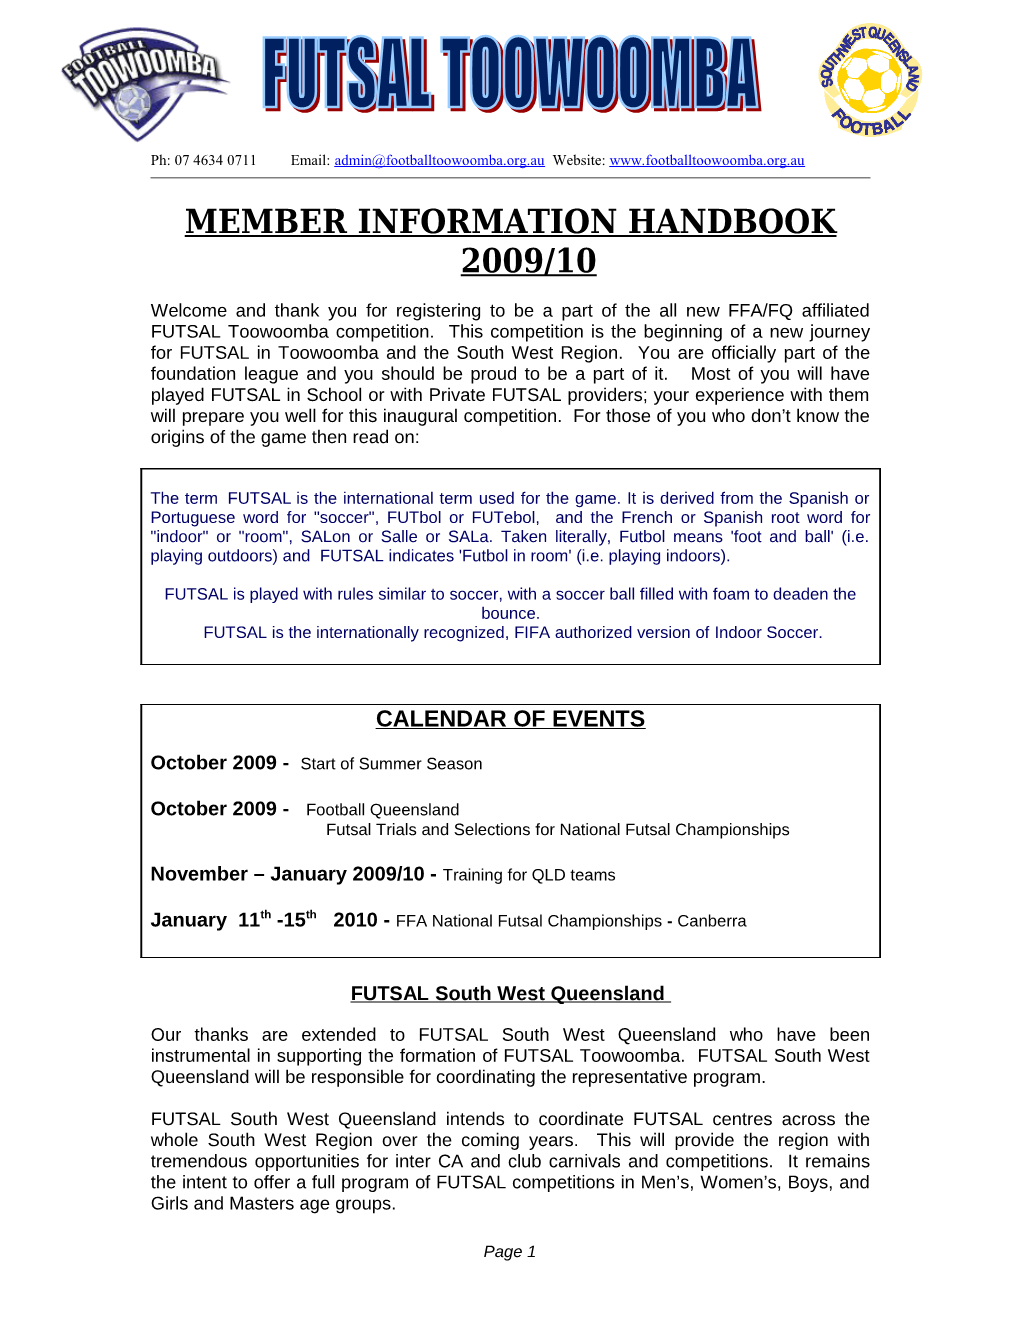 Member Information Handbook 2009/10